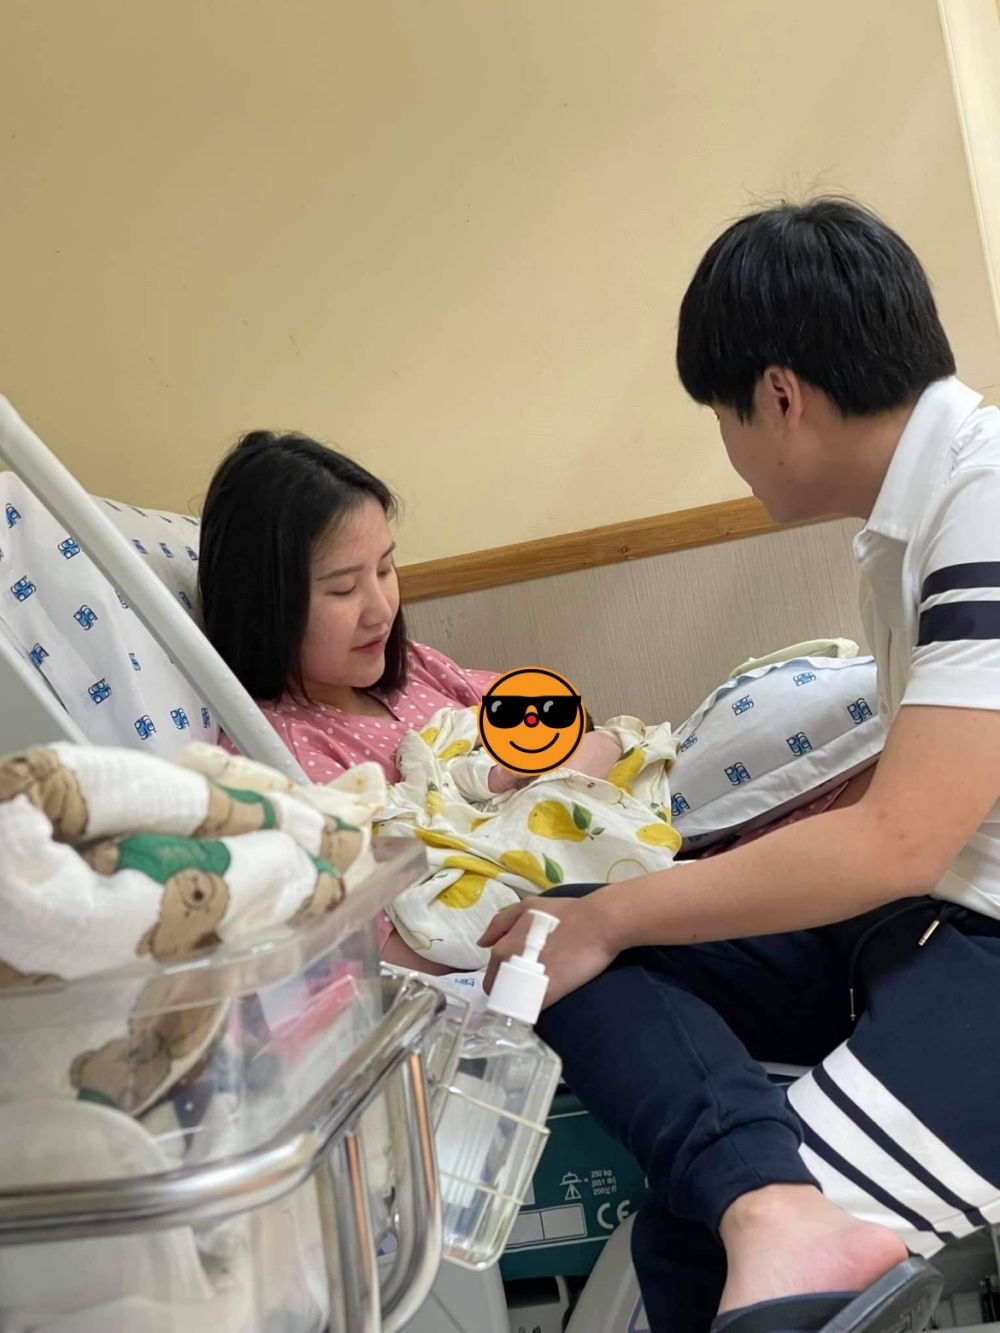  
Phan Thành luôn ở cạnh để chăm sóc vợ và con trai.